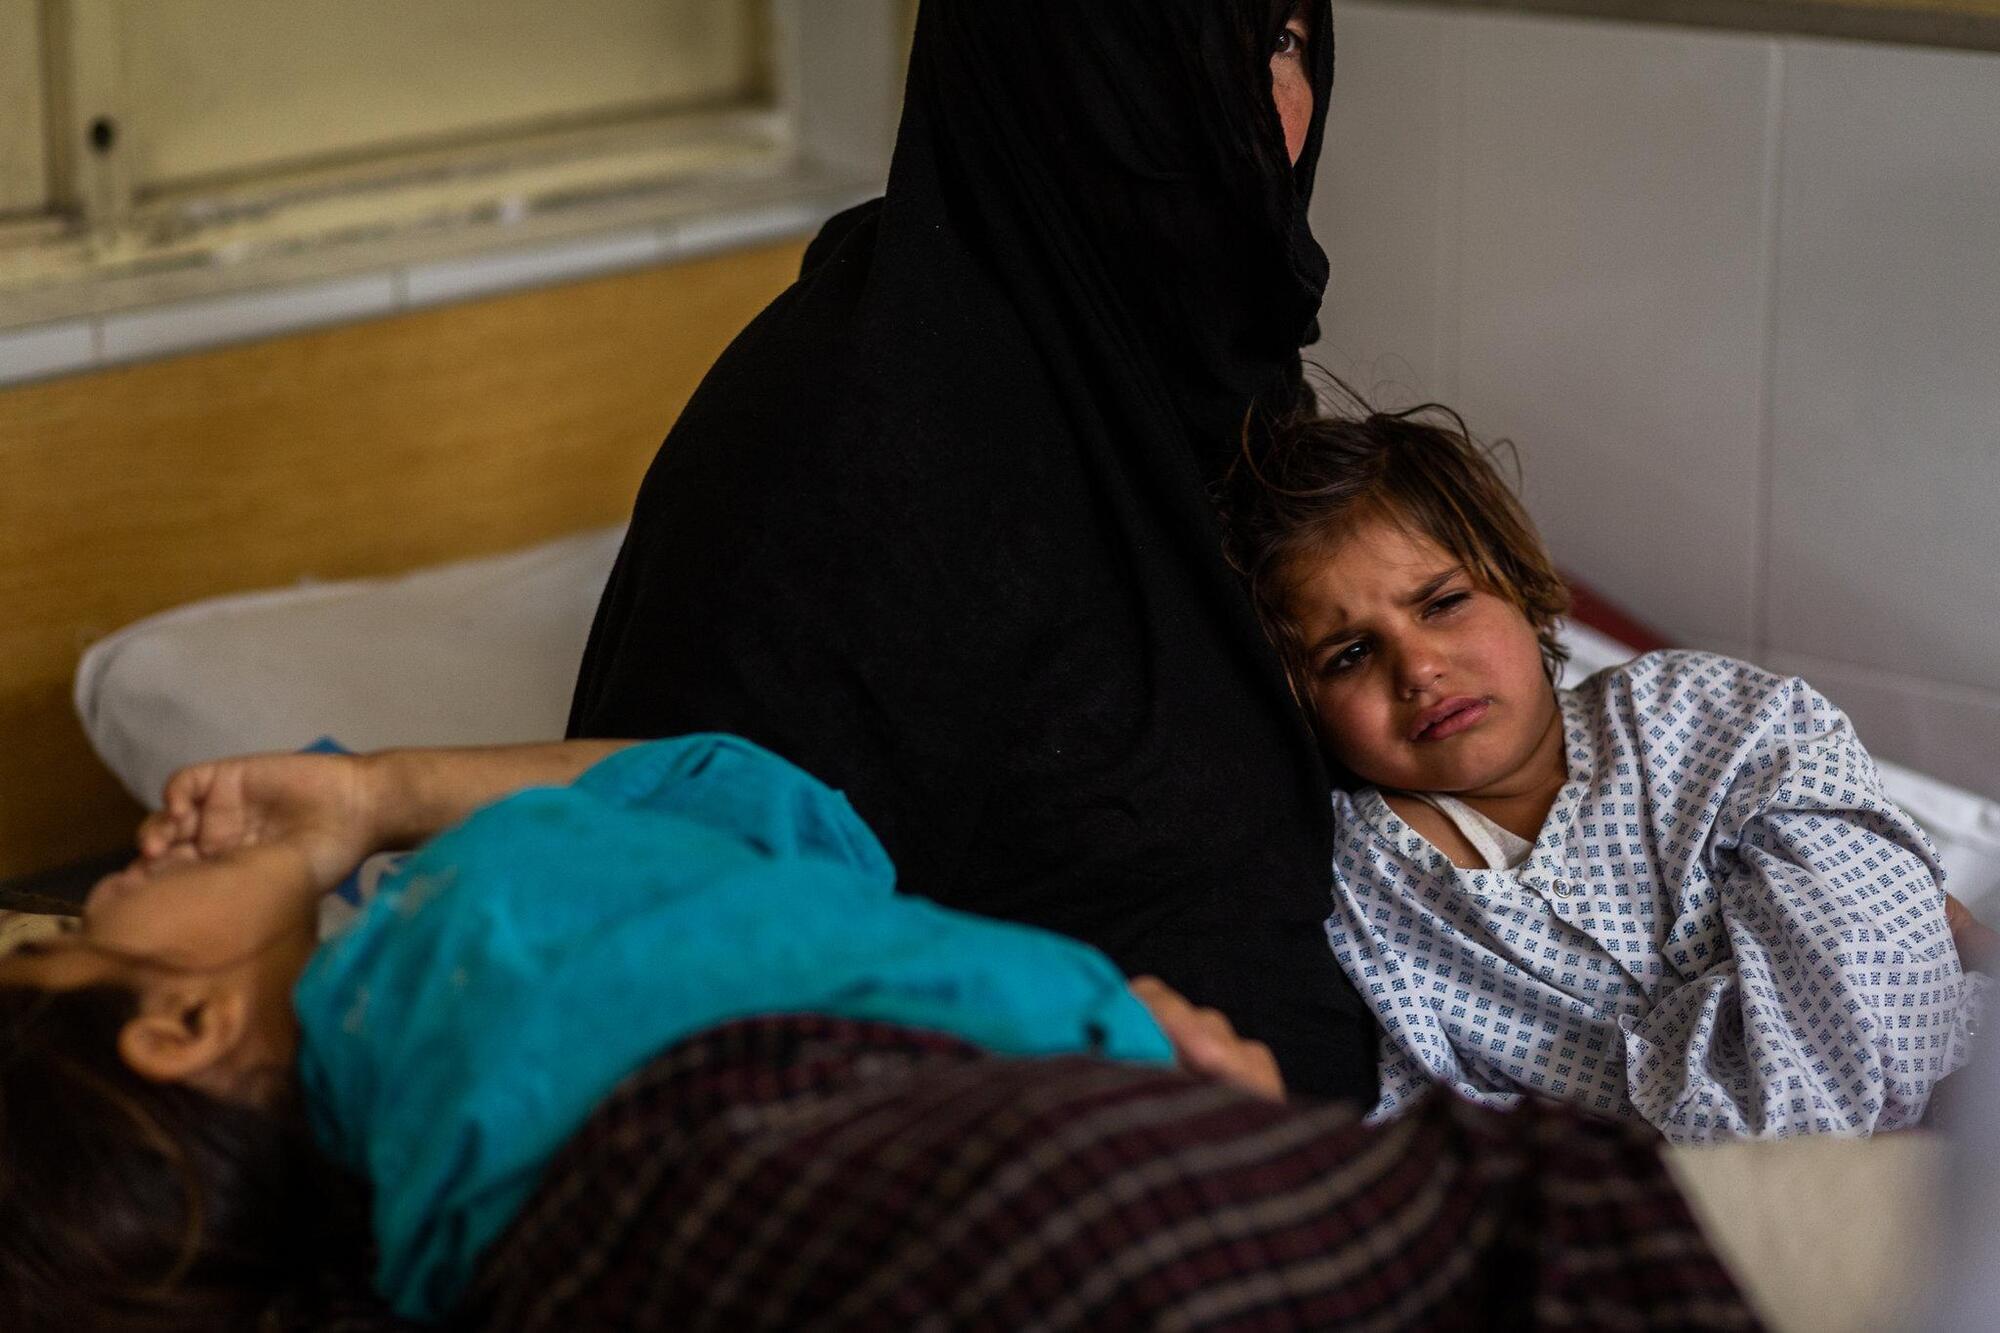 "Мне хотелось плакать": 7 детей из одной семьи потеряли ноги из-за взрыва боеприпаса. Фоторепортаж